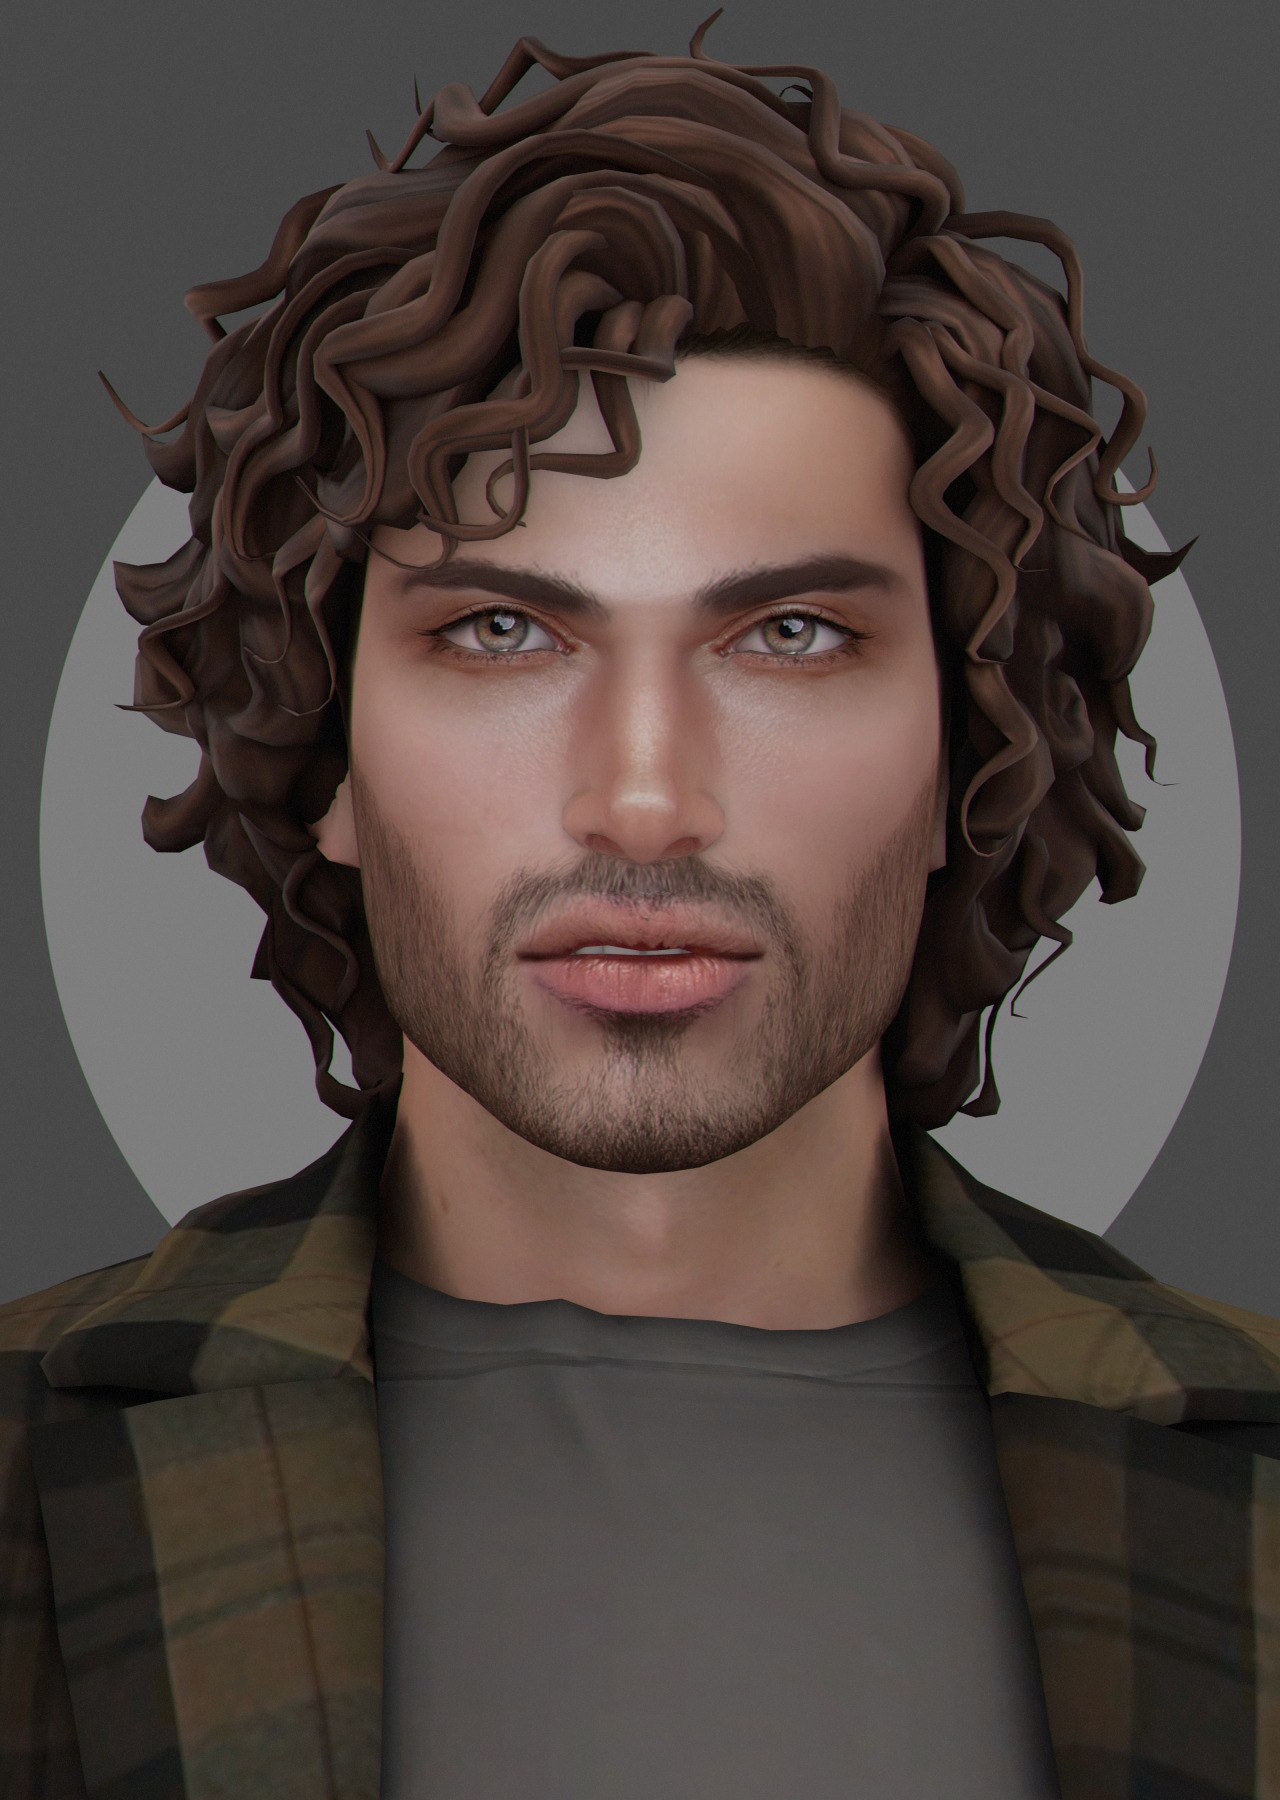 Sims 4 Male Cc Hair Tumblr Linkedsno